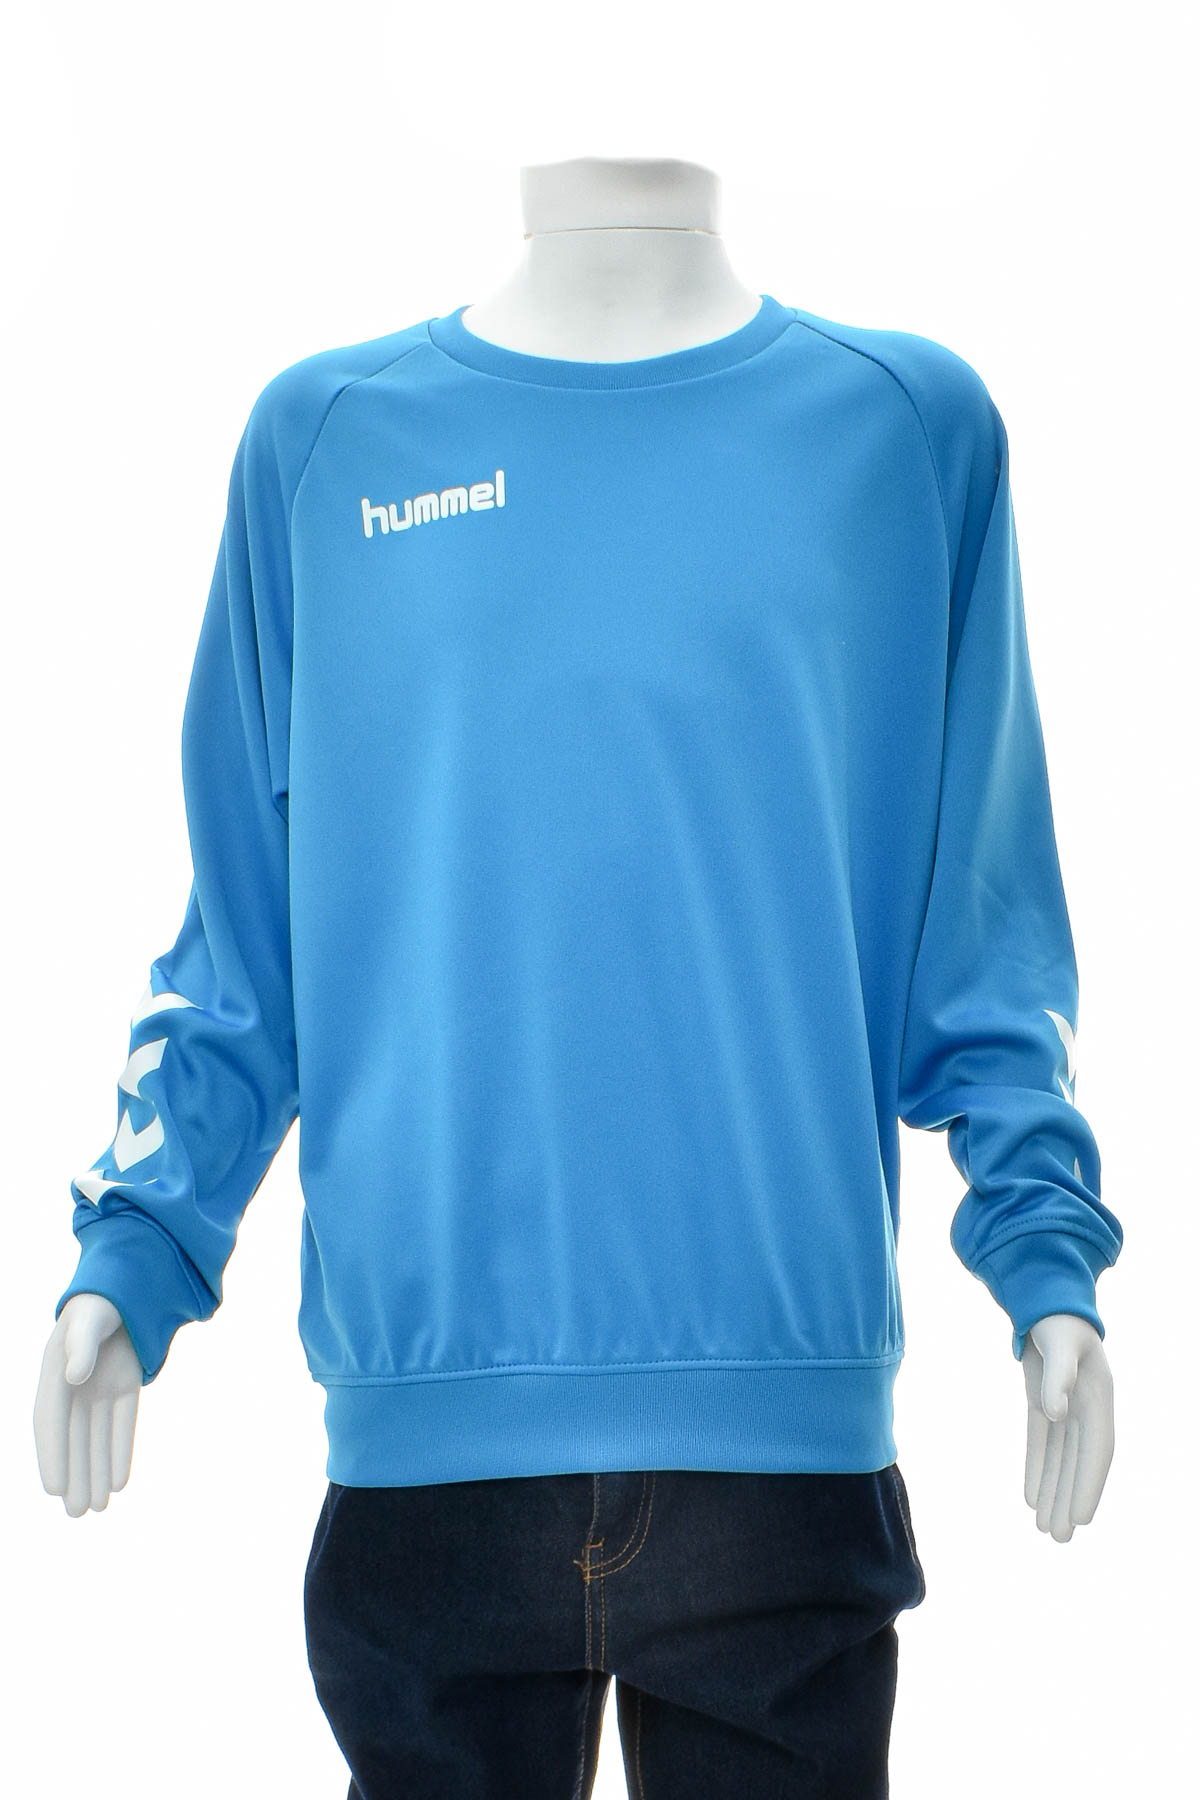 Μπλούζα για αγόρι - Hummel - 0